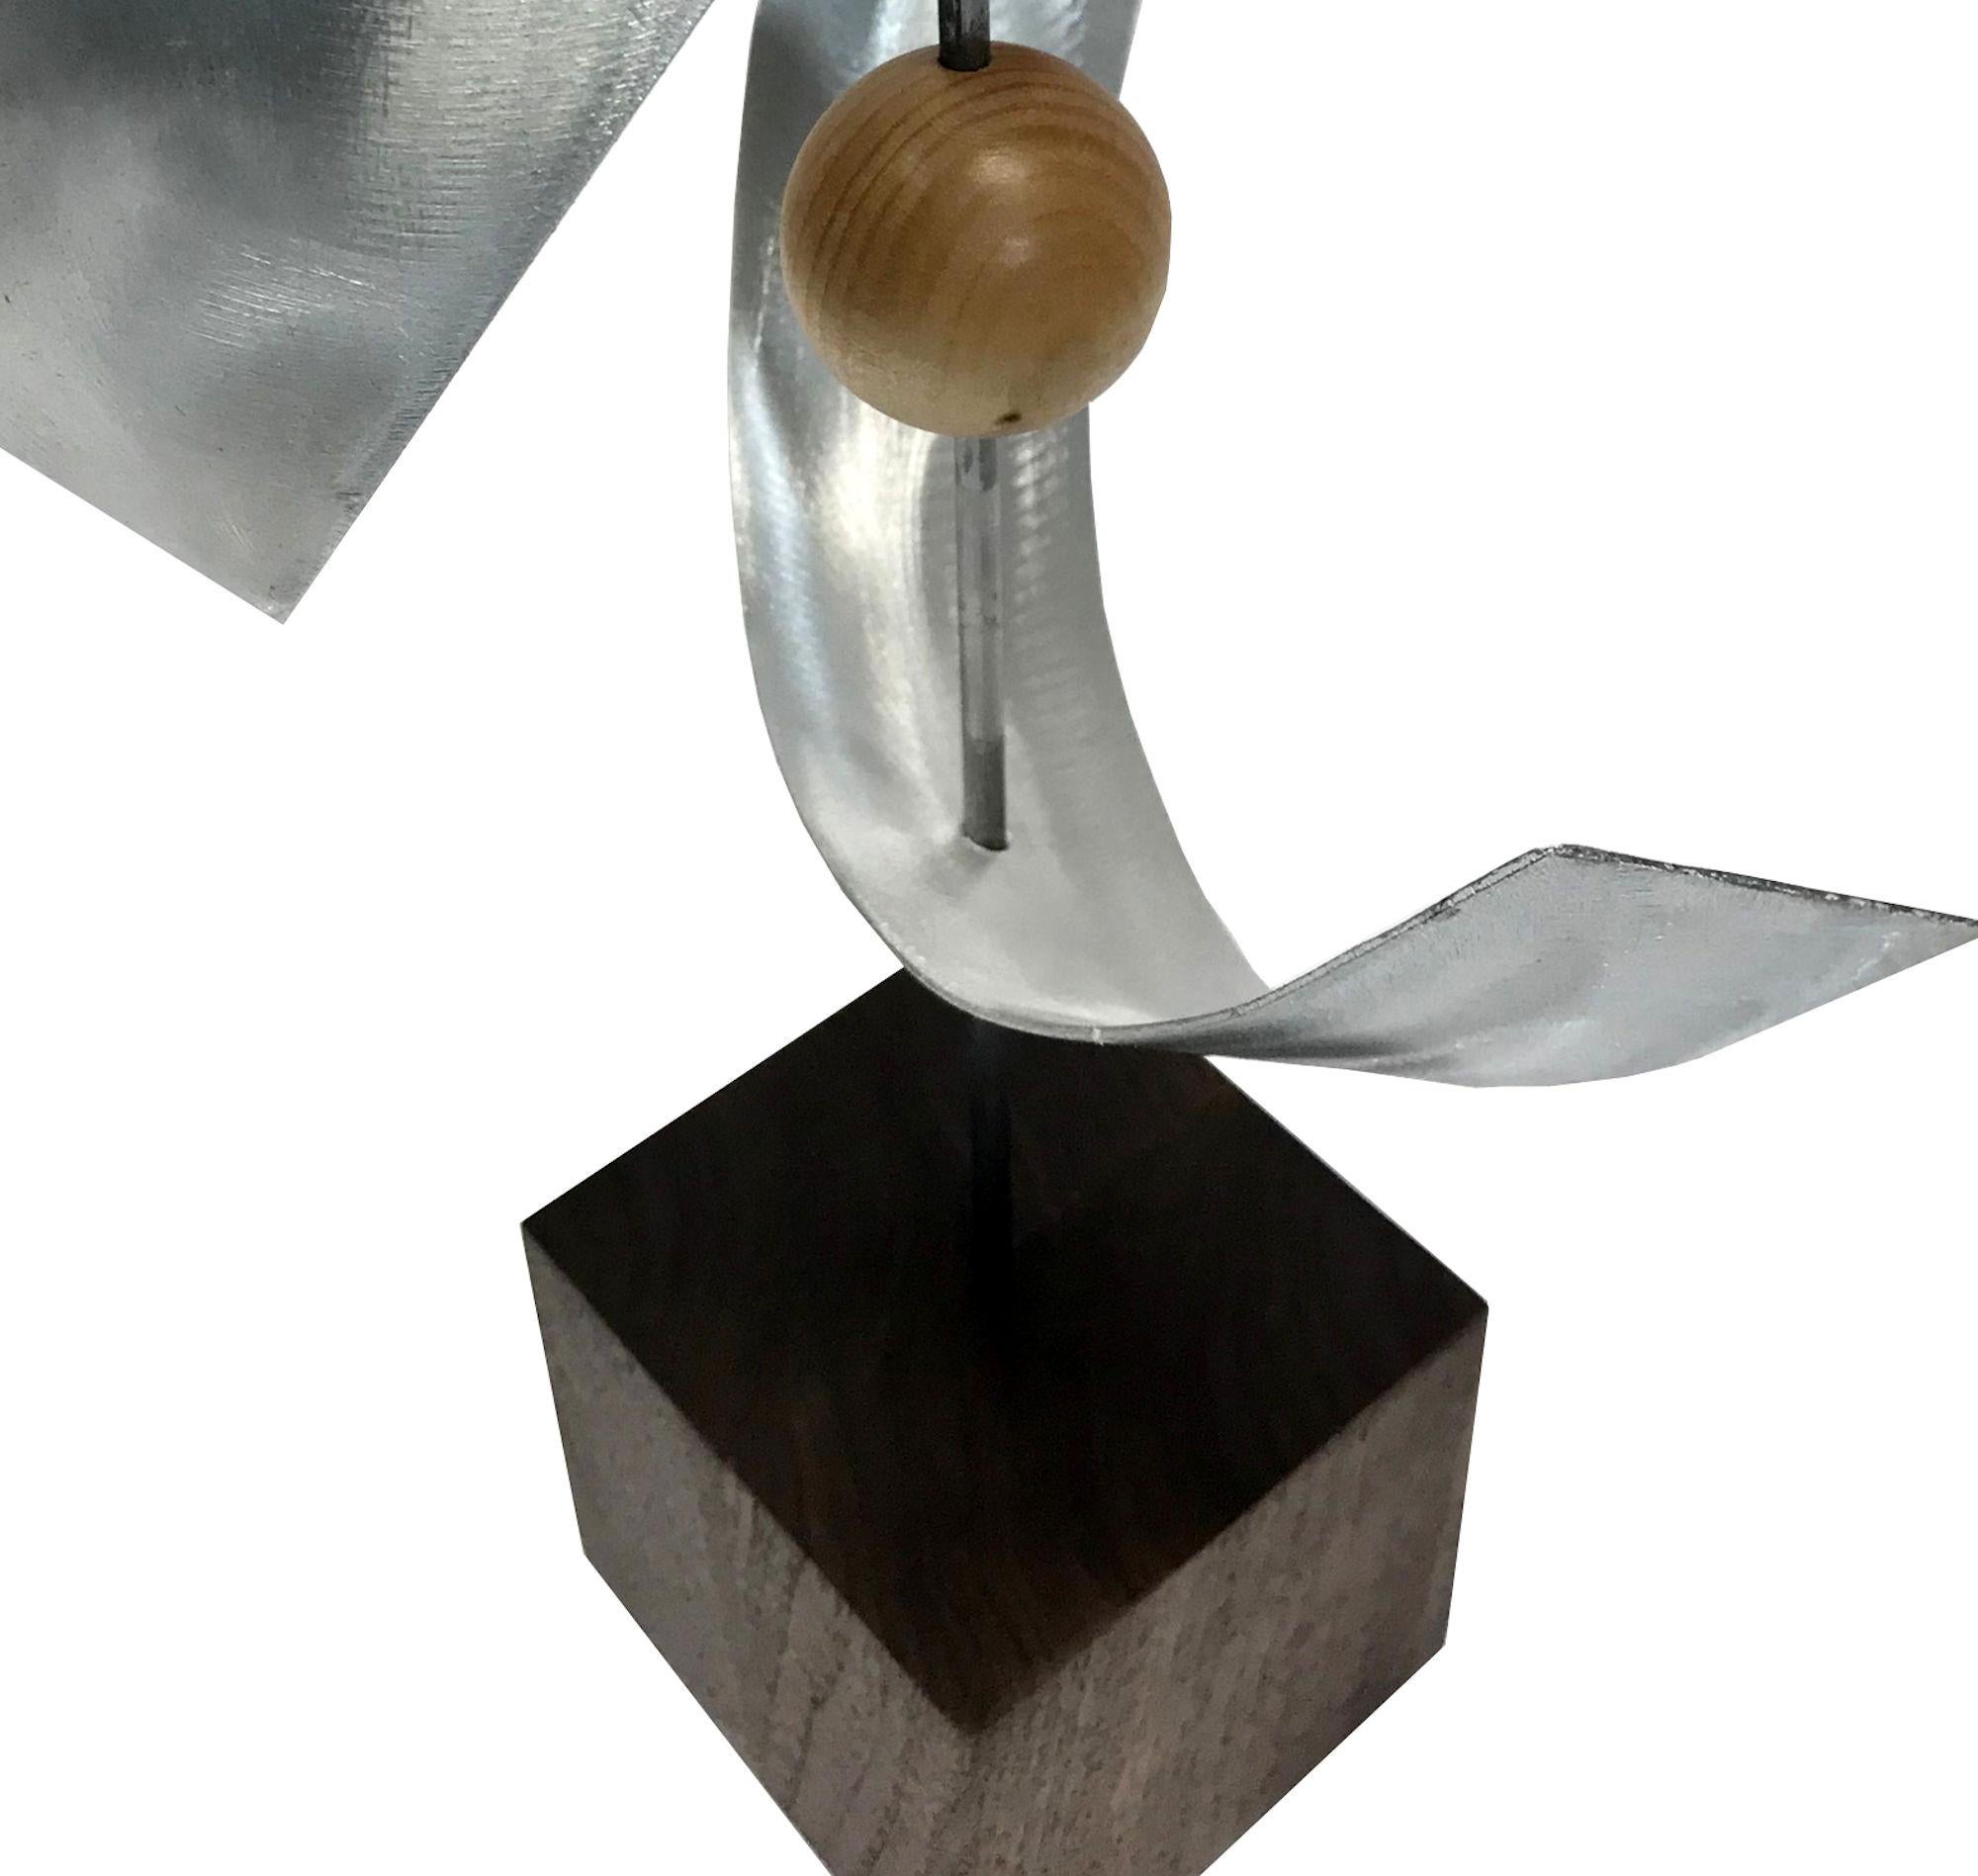 Description:  This sculpture consists of bent aluminum, 3/16